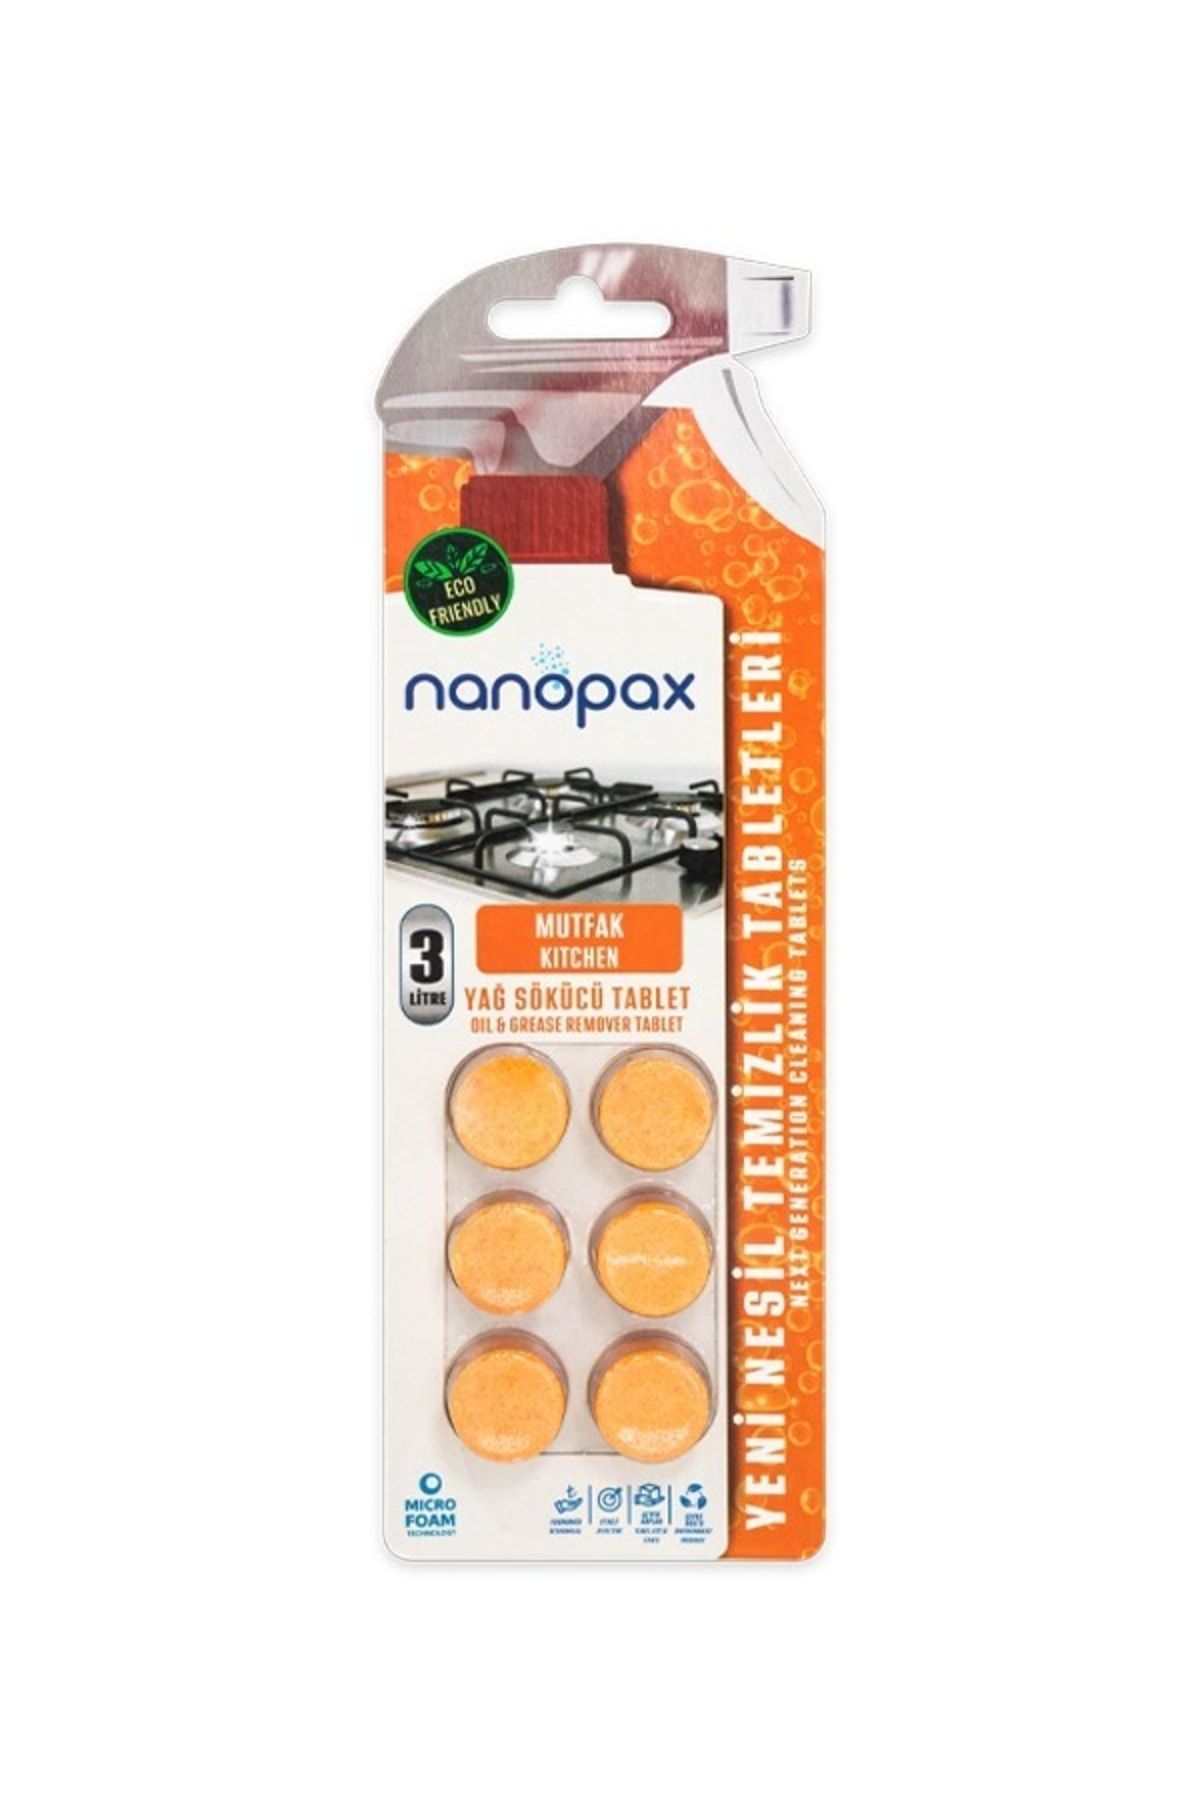 Miniso Nanopax Yağ Sökücü Temizlik Tableti 6 Tablet 3 L